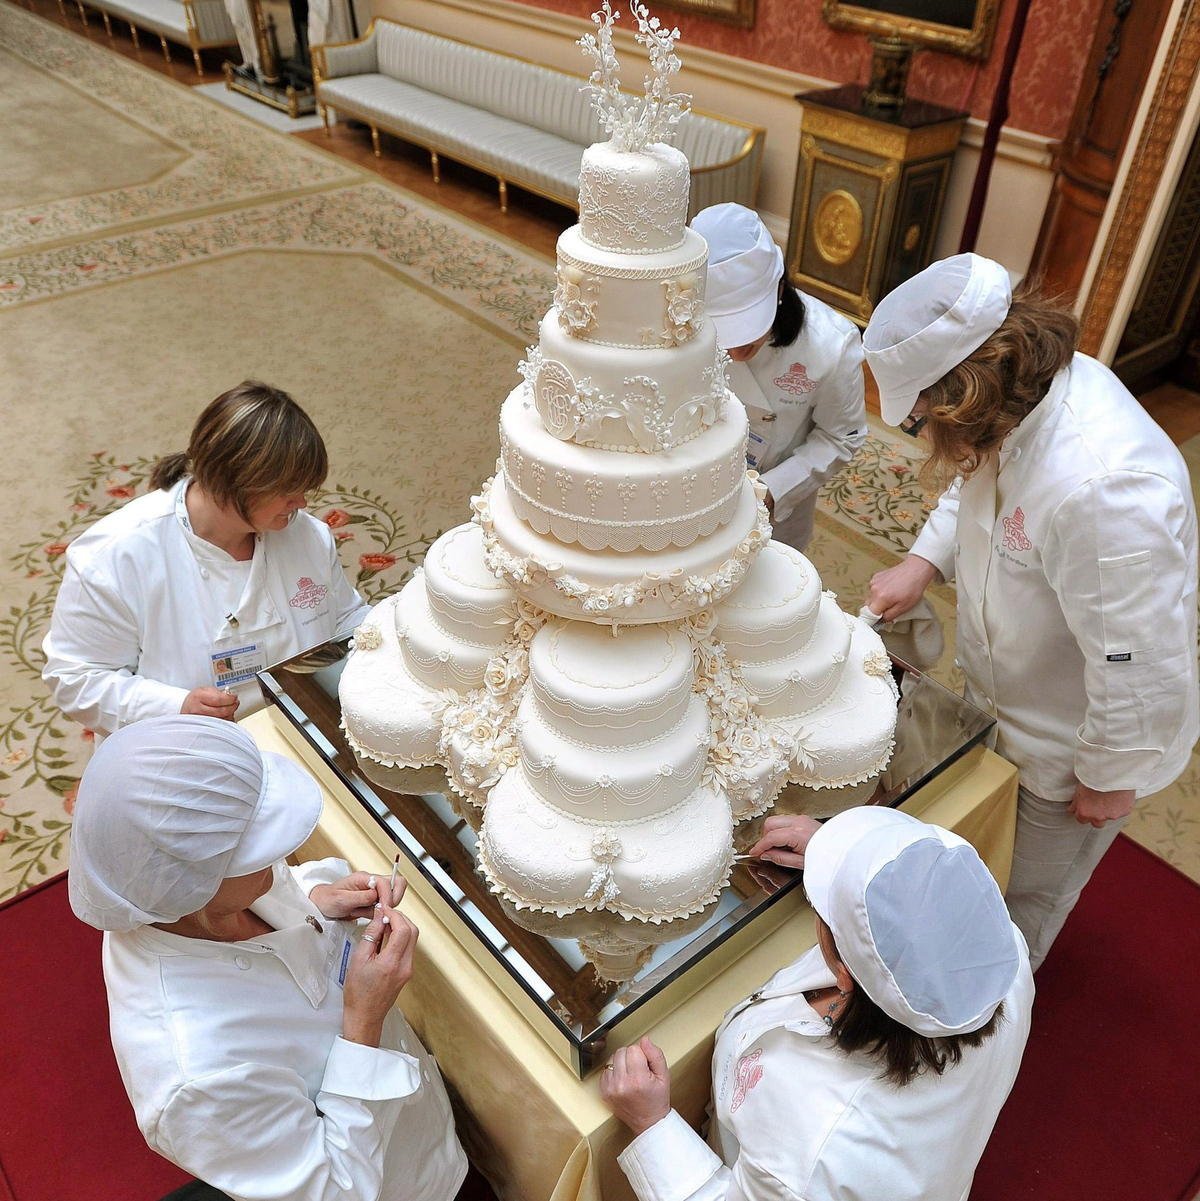 Популярный кондитер. Свадебный торт принца Уильяма и Кейт Миддлтон. Торт на свадьбе Кейт Миддлтон и принца Уильяма. Свадебный торт Кейт Миддлтон. Торт на свадьбе принца Уильяма и Кейт.